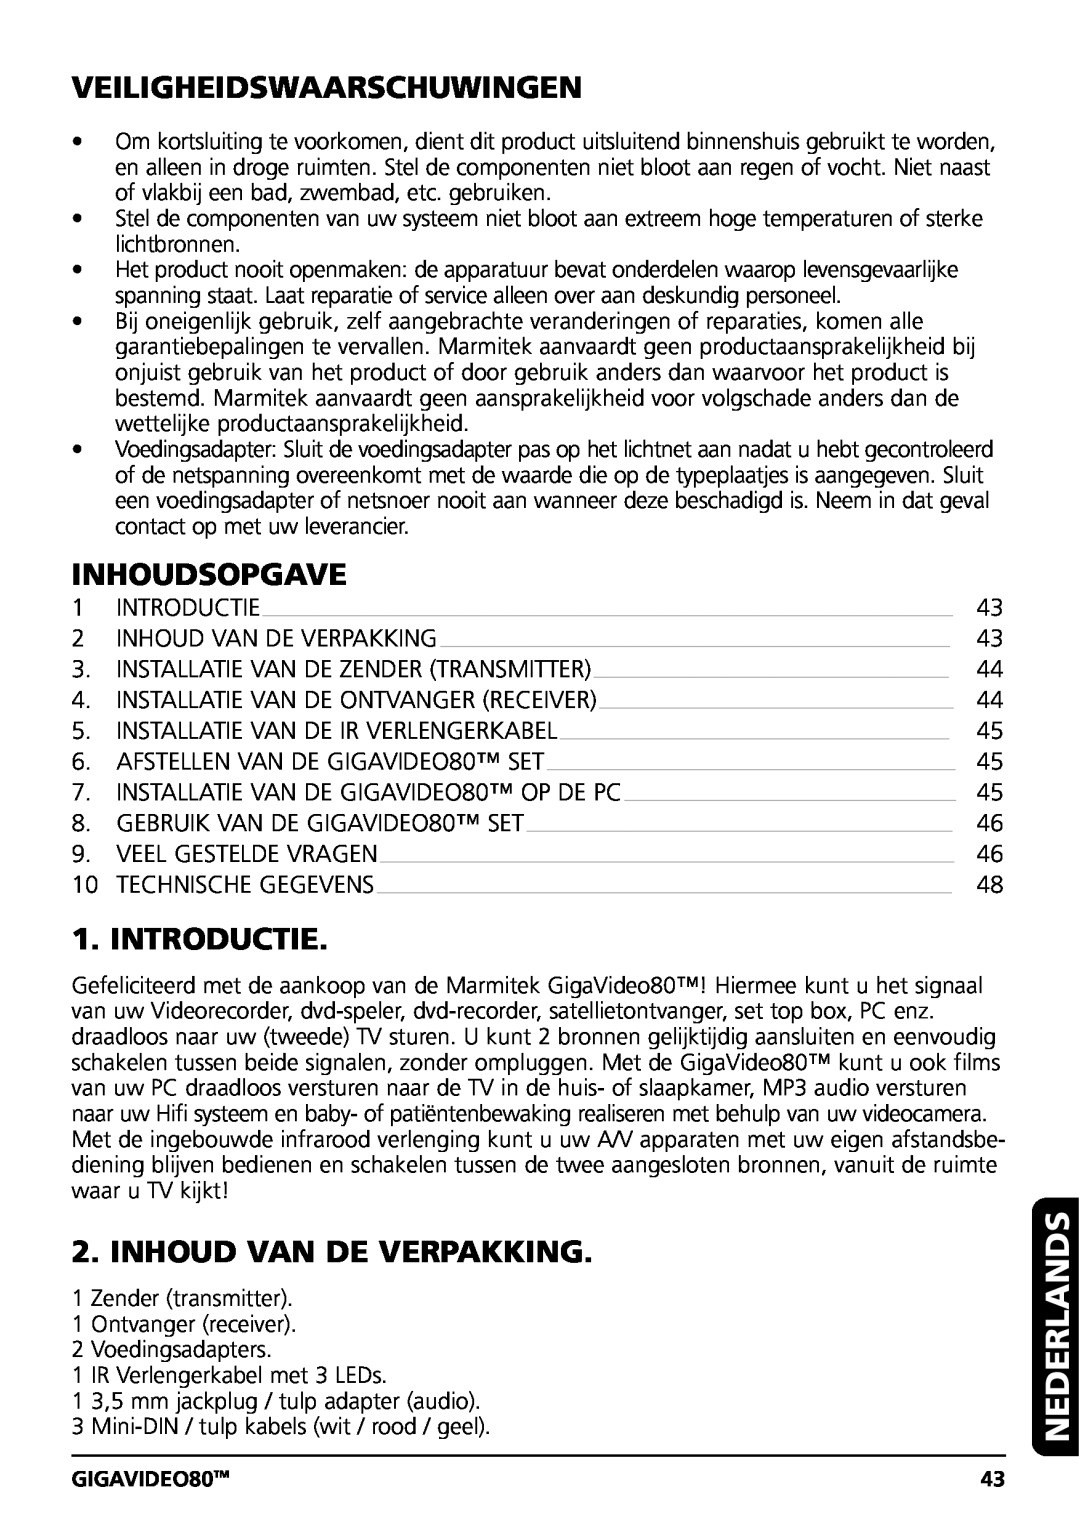 Marmitek GIGAVIDEO80 Nederlands, Veiligheidswaarschuwingen, Inhoudsopgave, Introductie, Inhoud Van De Verpakking 